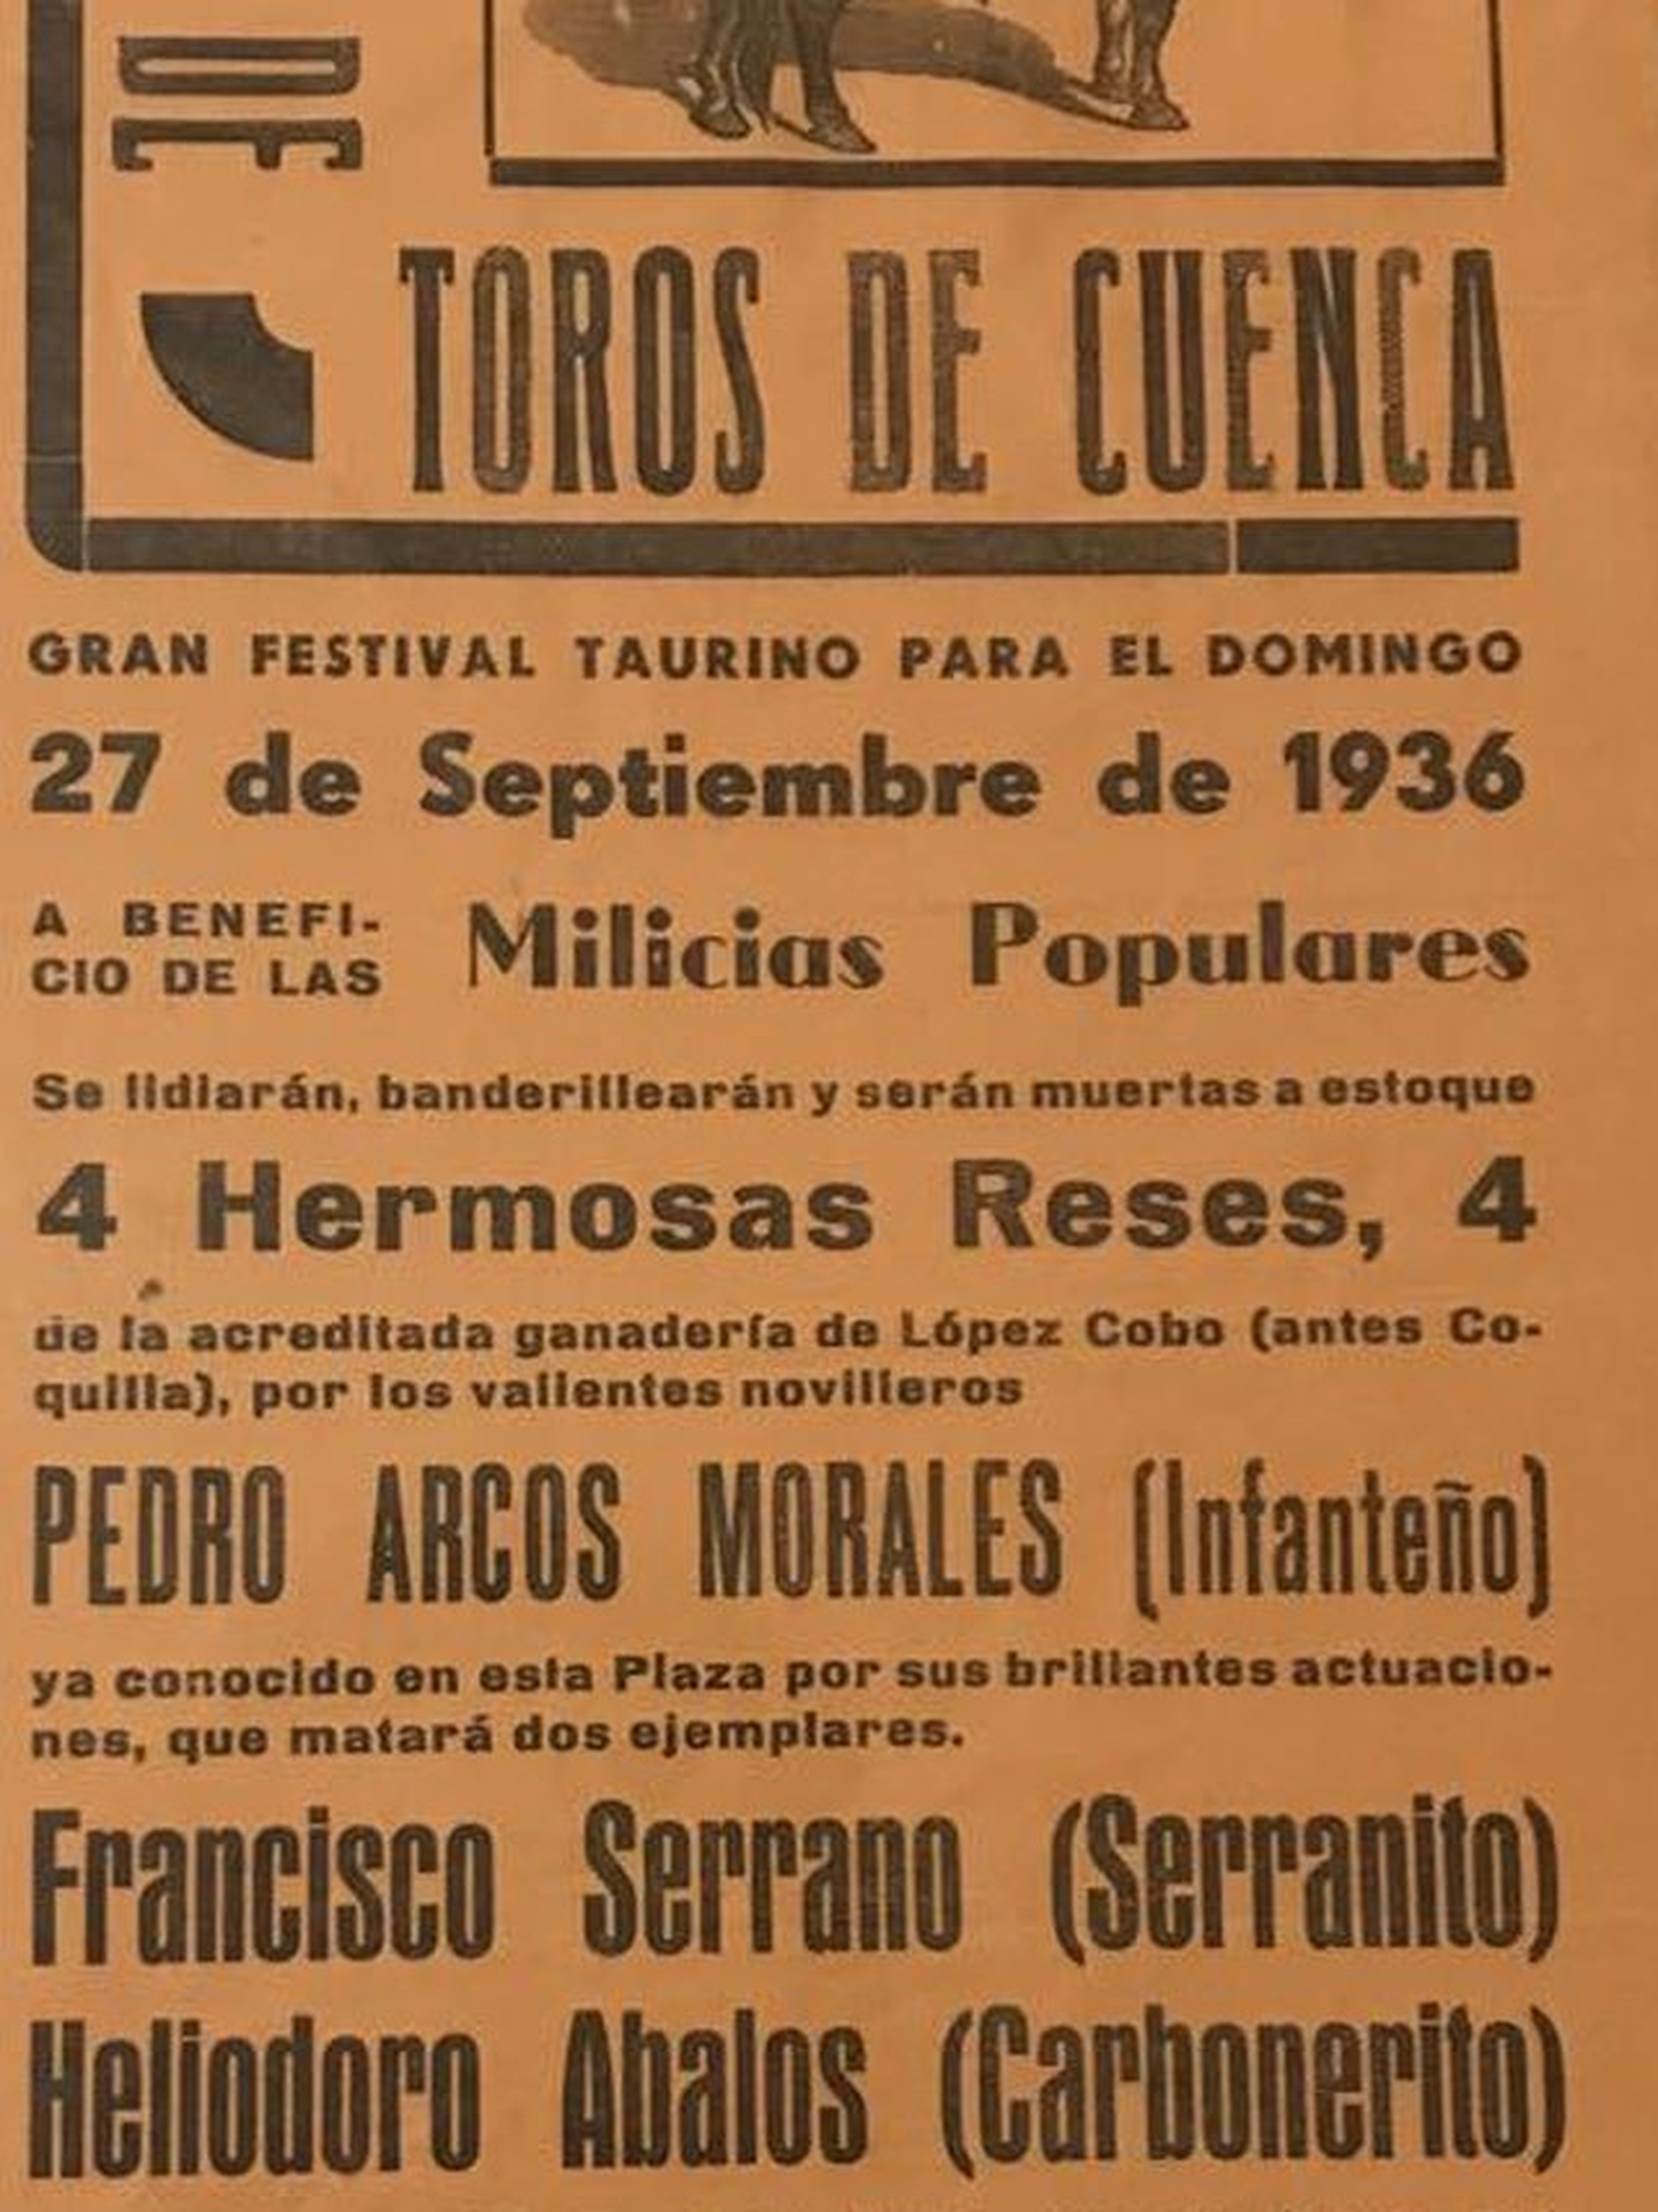 Cartel de un acto benéfico en la Plaza de Toros de Cuenca en favor de las milicias populares (septiembre de 1936).